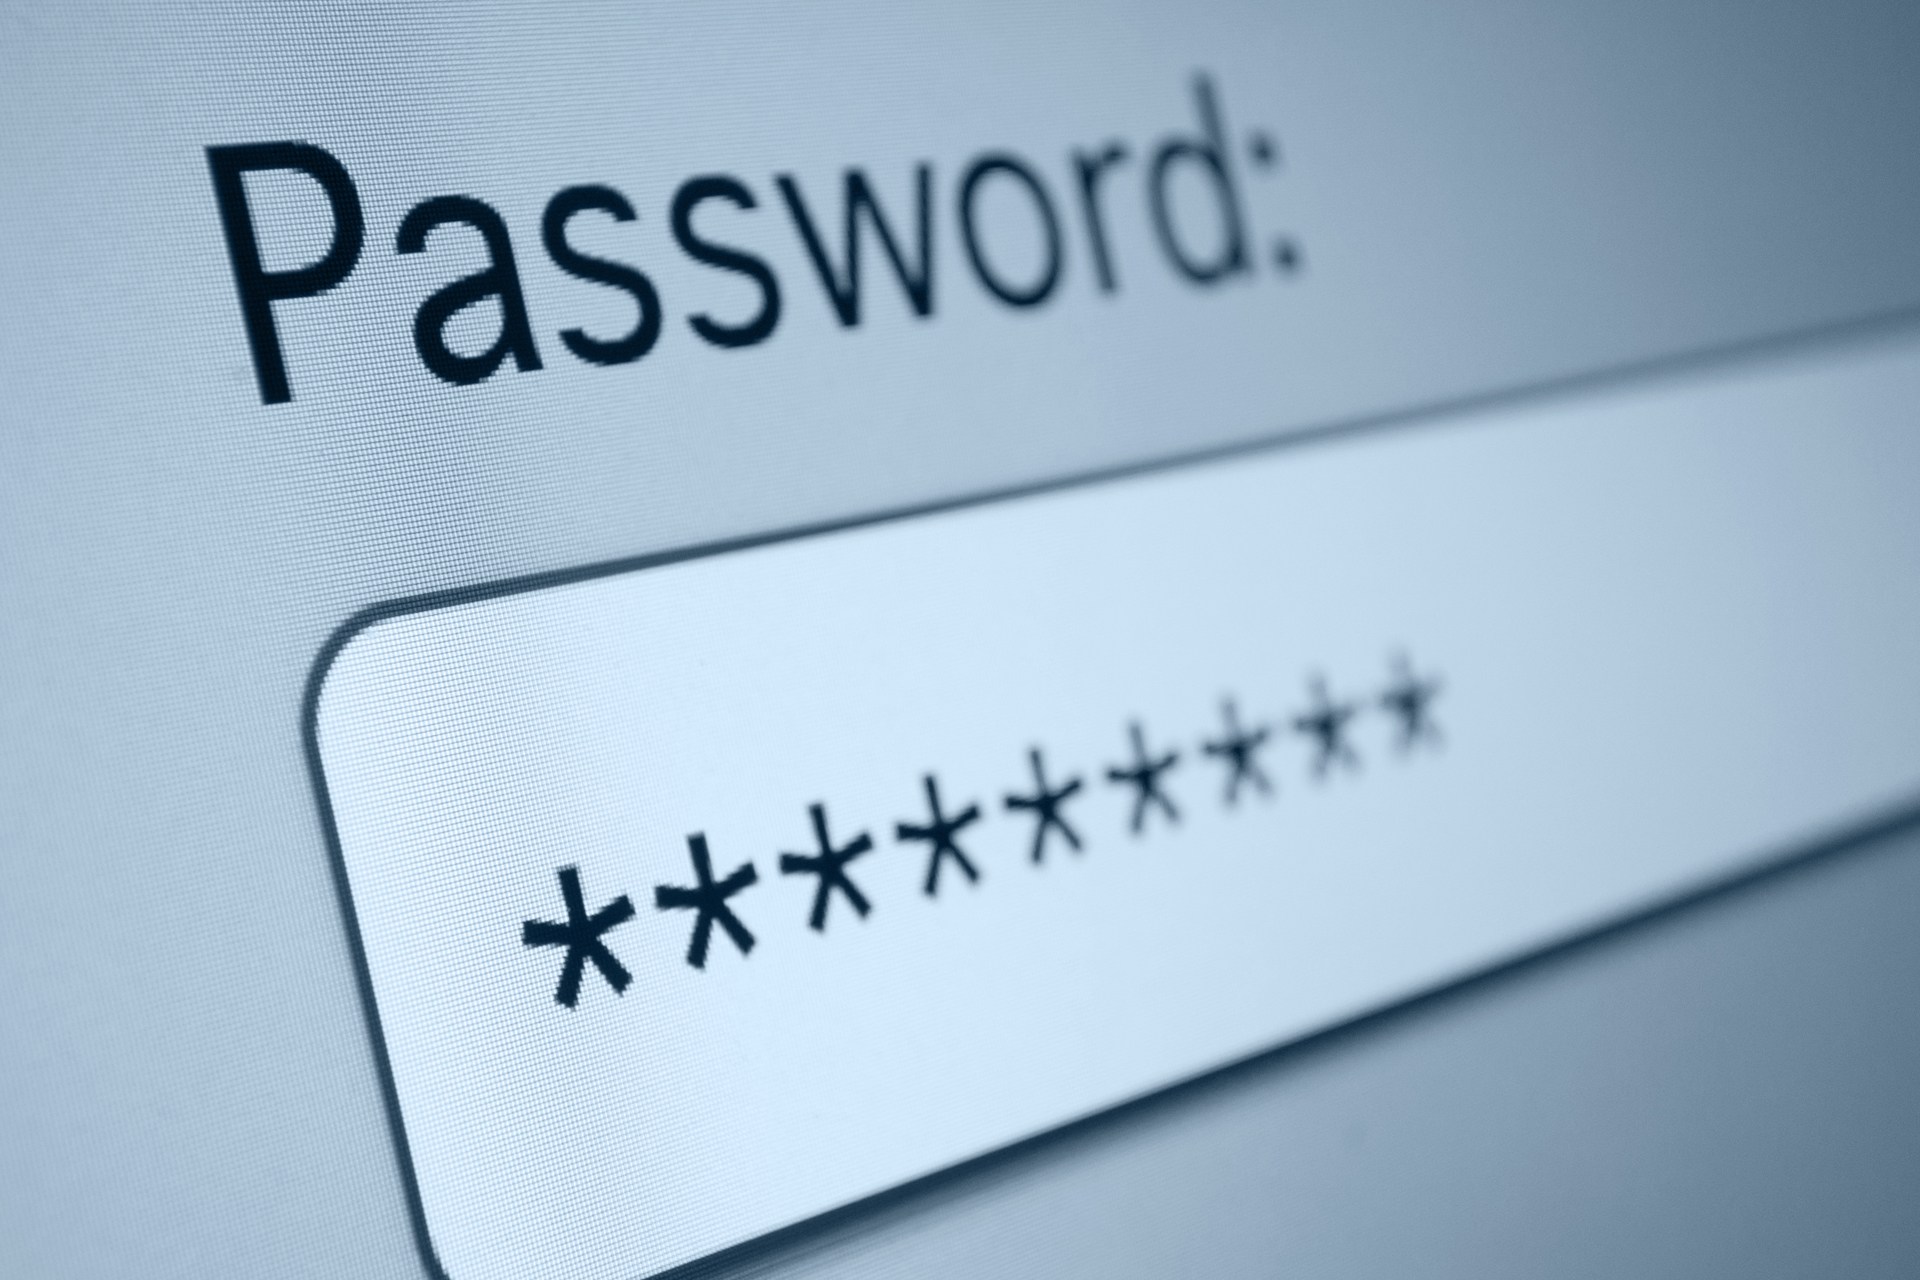 password-protect